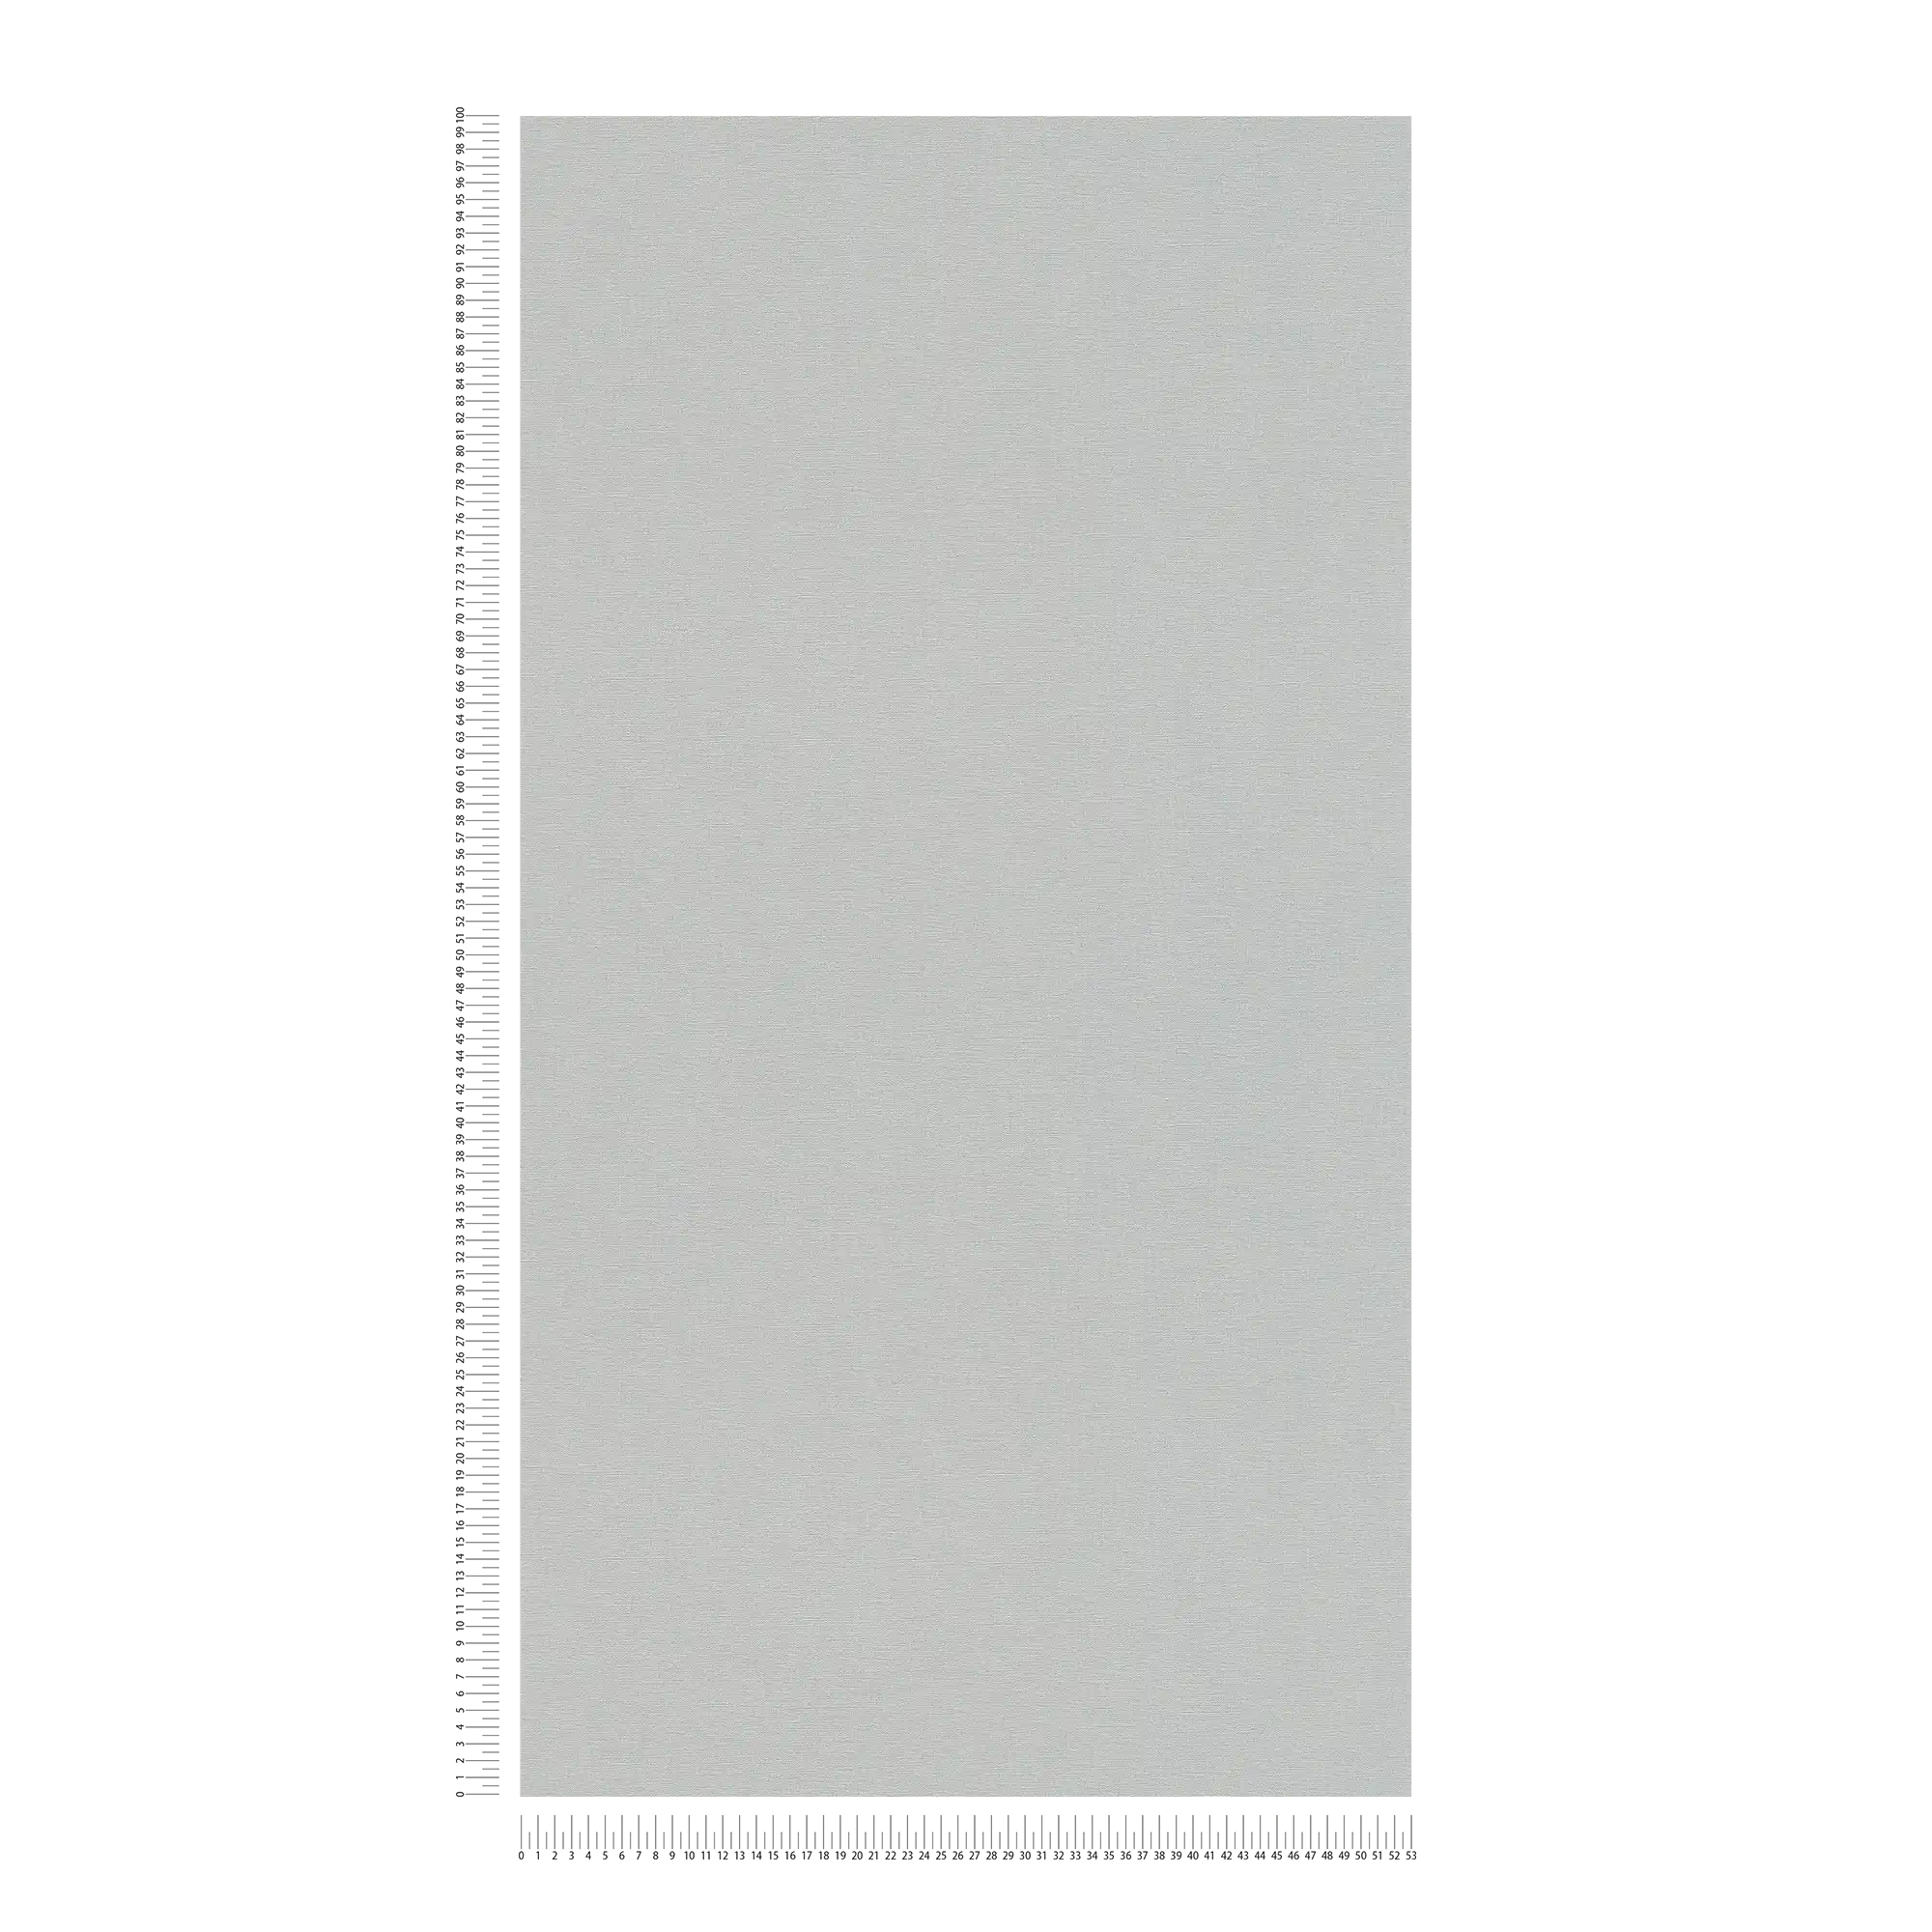             Papier peint uni avec léger effet structuré - gris, gris foncé
        